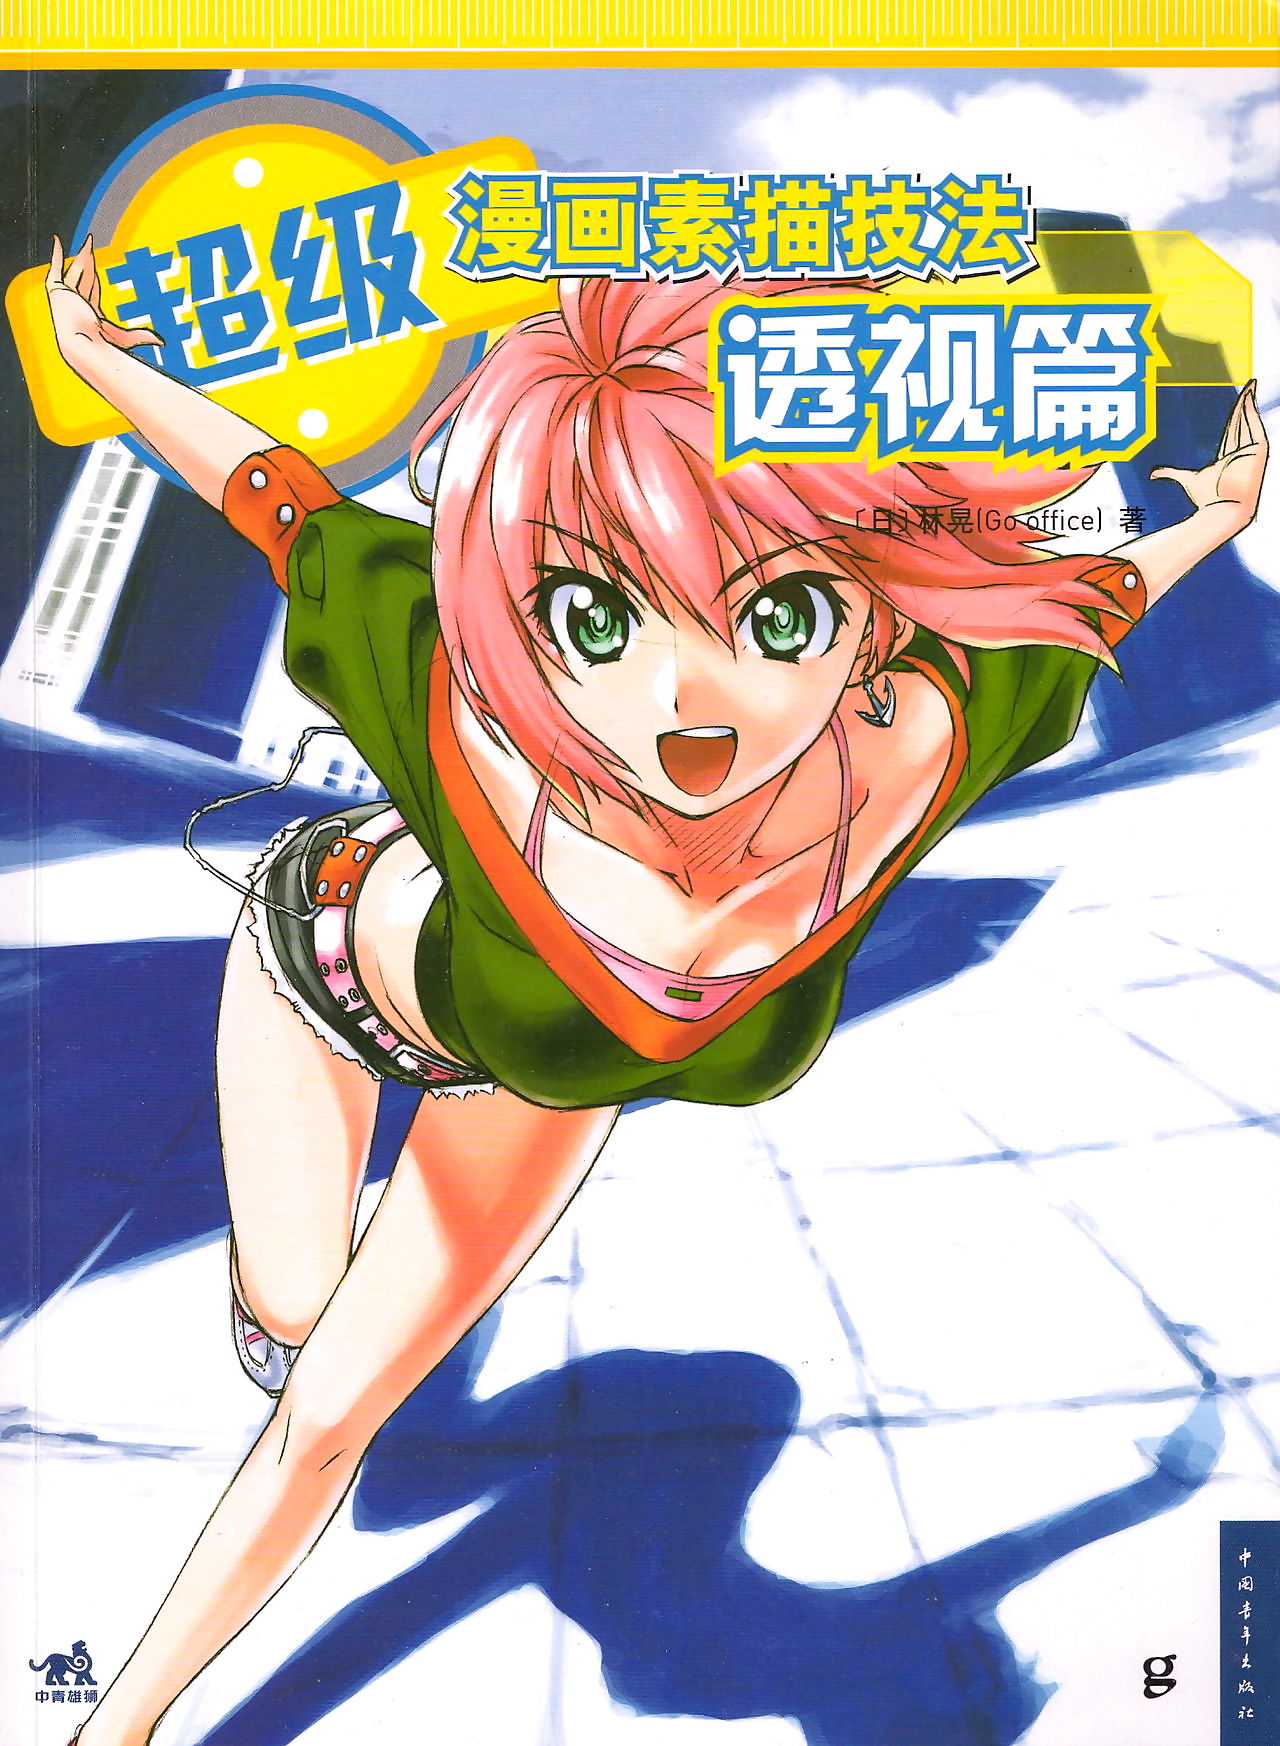 कितनी ही आगे पहल manga: चित्र मंगा शैली के लिए हर कोई के एक जोड़ें ऊपर करने के लिए 4: के लिए हर कोई करीब करने के लिए केन